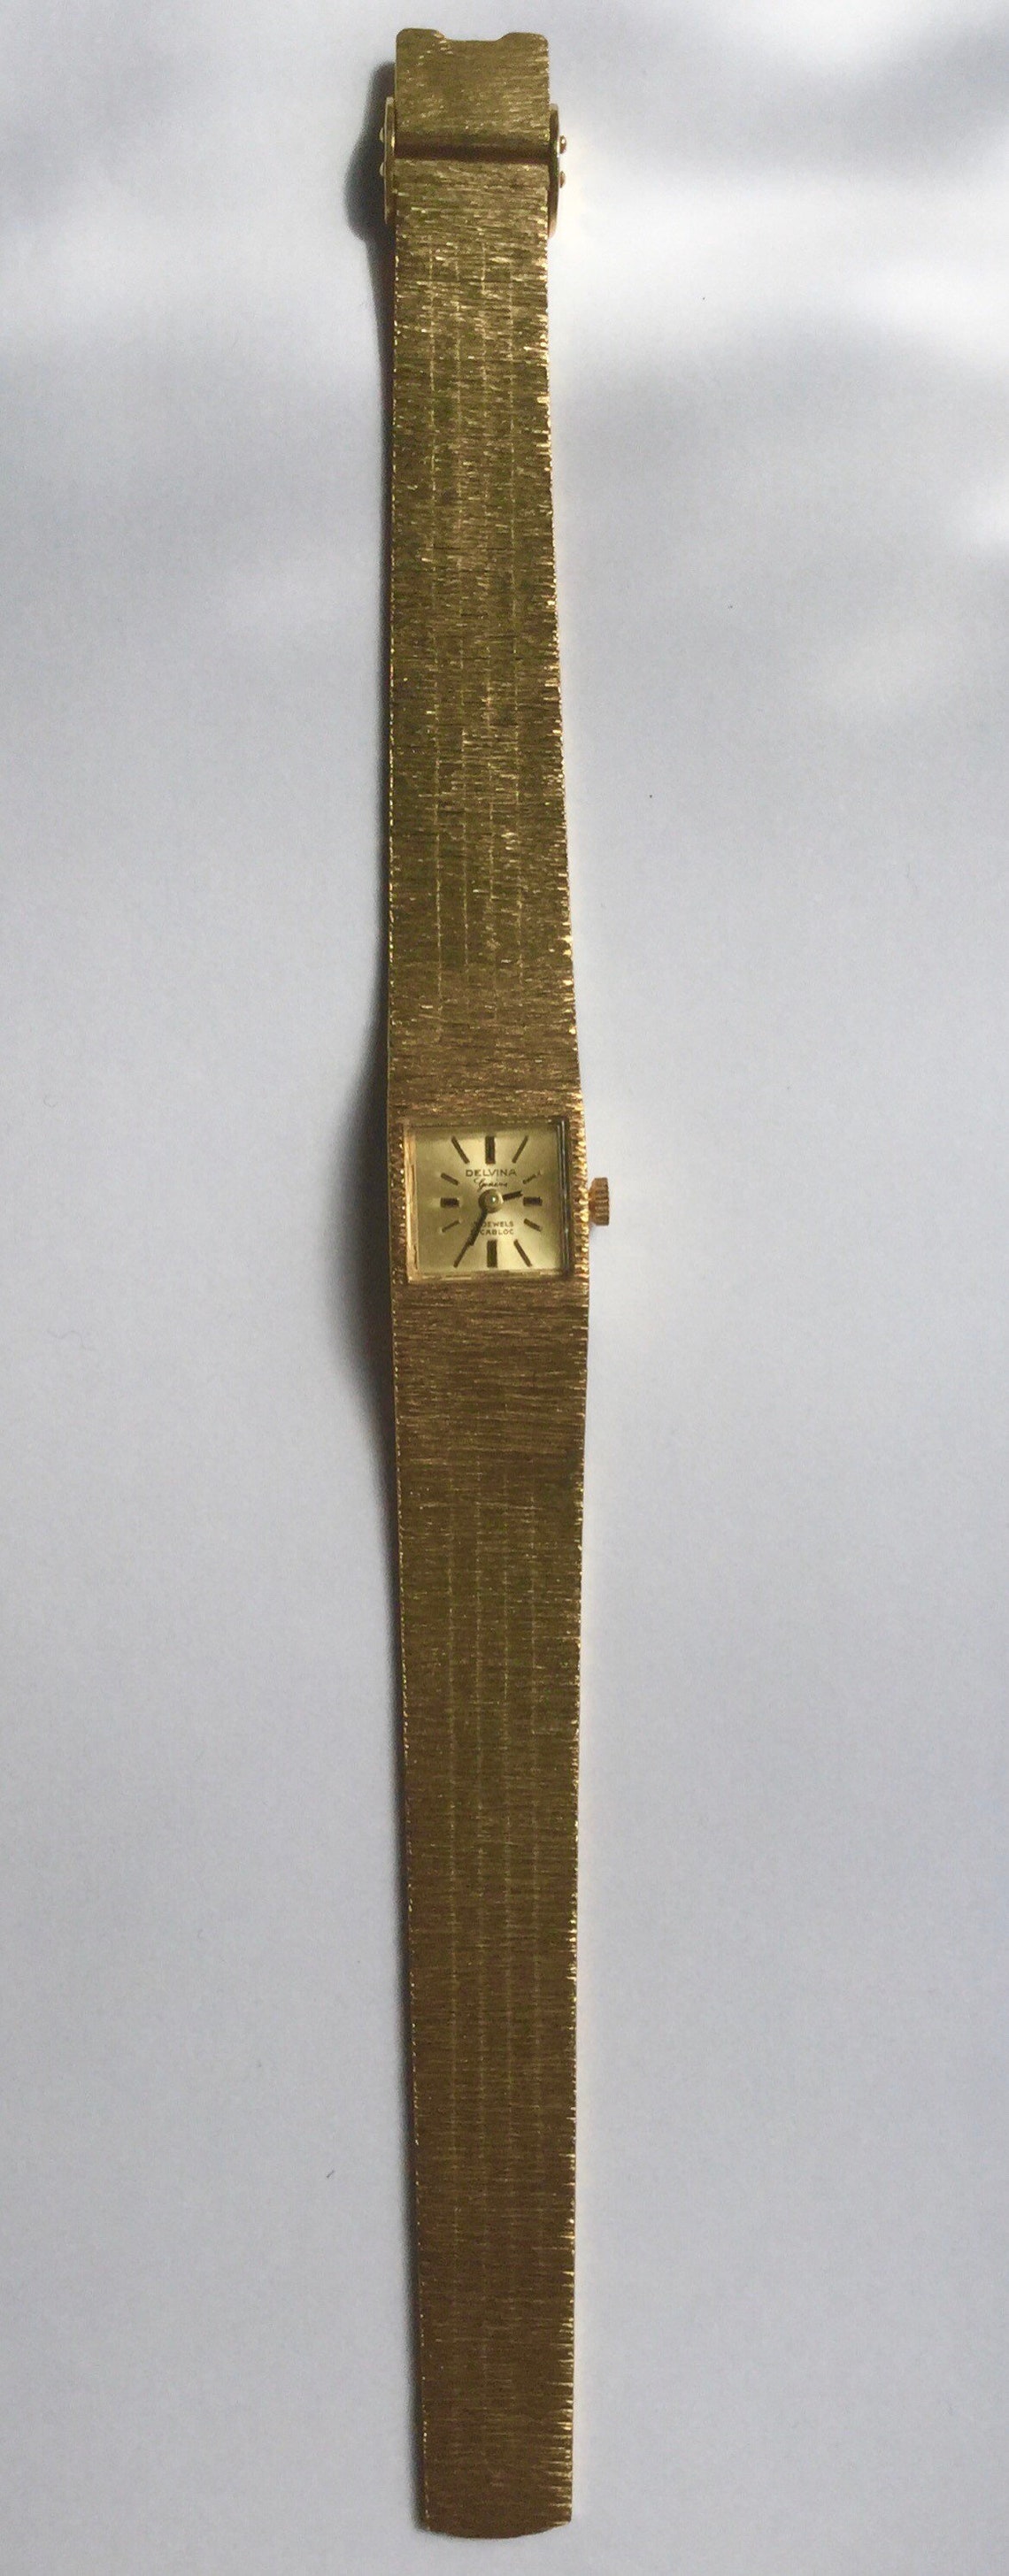 Vintage Delvina watch | Etsy